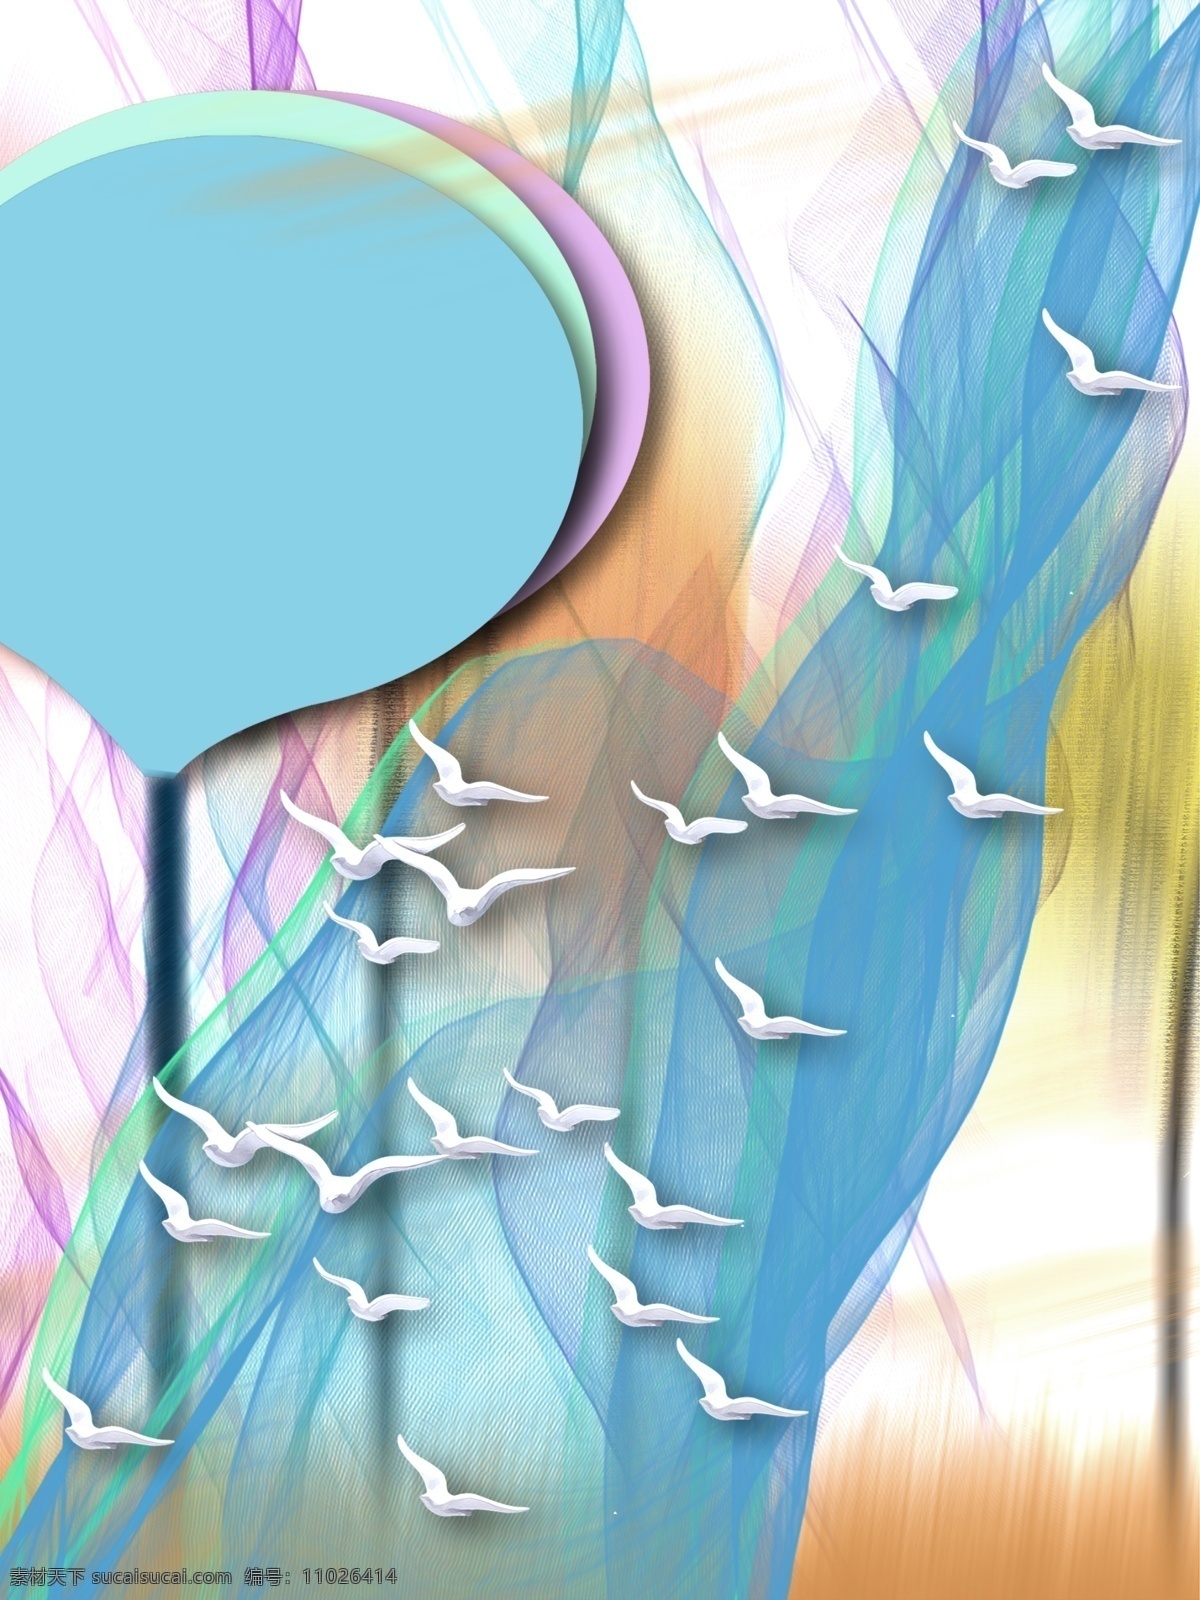 简约 淡雅 立体 浮雕 飞鸟 客厅 装饰画 简约唯美 一联画 客厅装饰画 蓝色纱网 立体浮雕鸟 叠加圆树